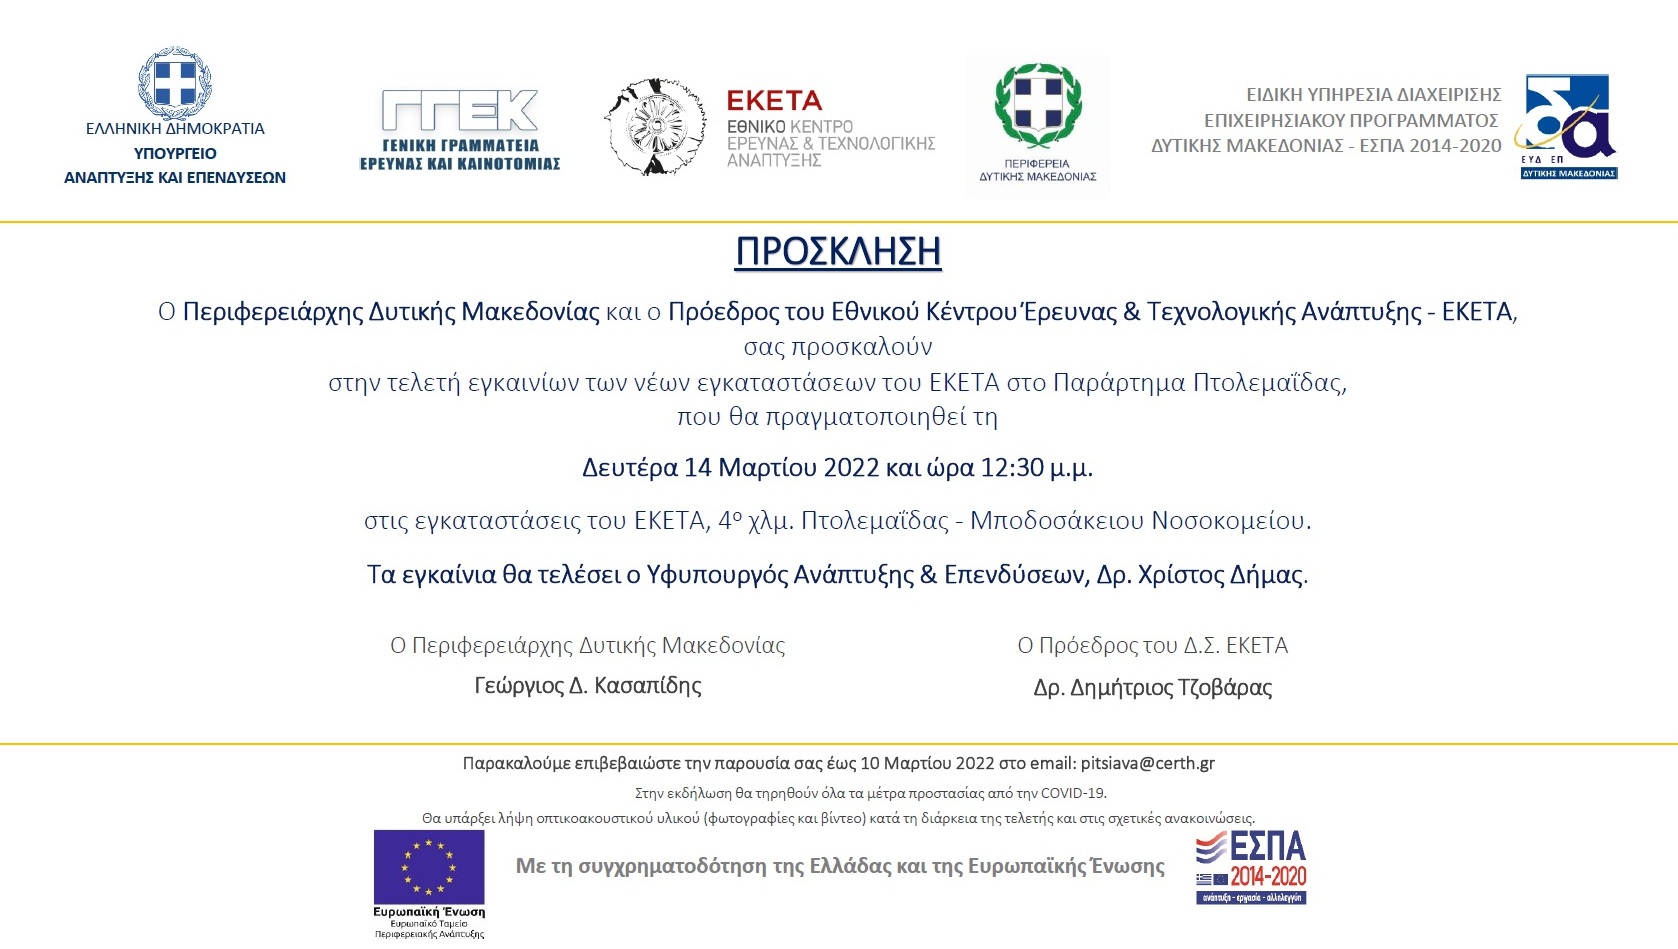 Τελετή εγκαινίων των νέων κτιριακών εγκαταστάσεων του ΕΚΕΤΑ στο παράρτημα Πτολεμαΐδας - Πρόσκληση